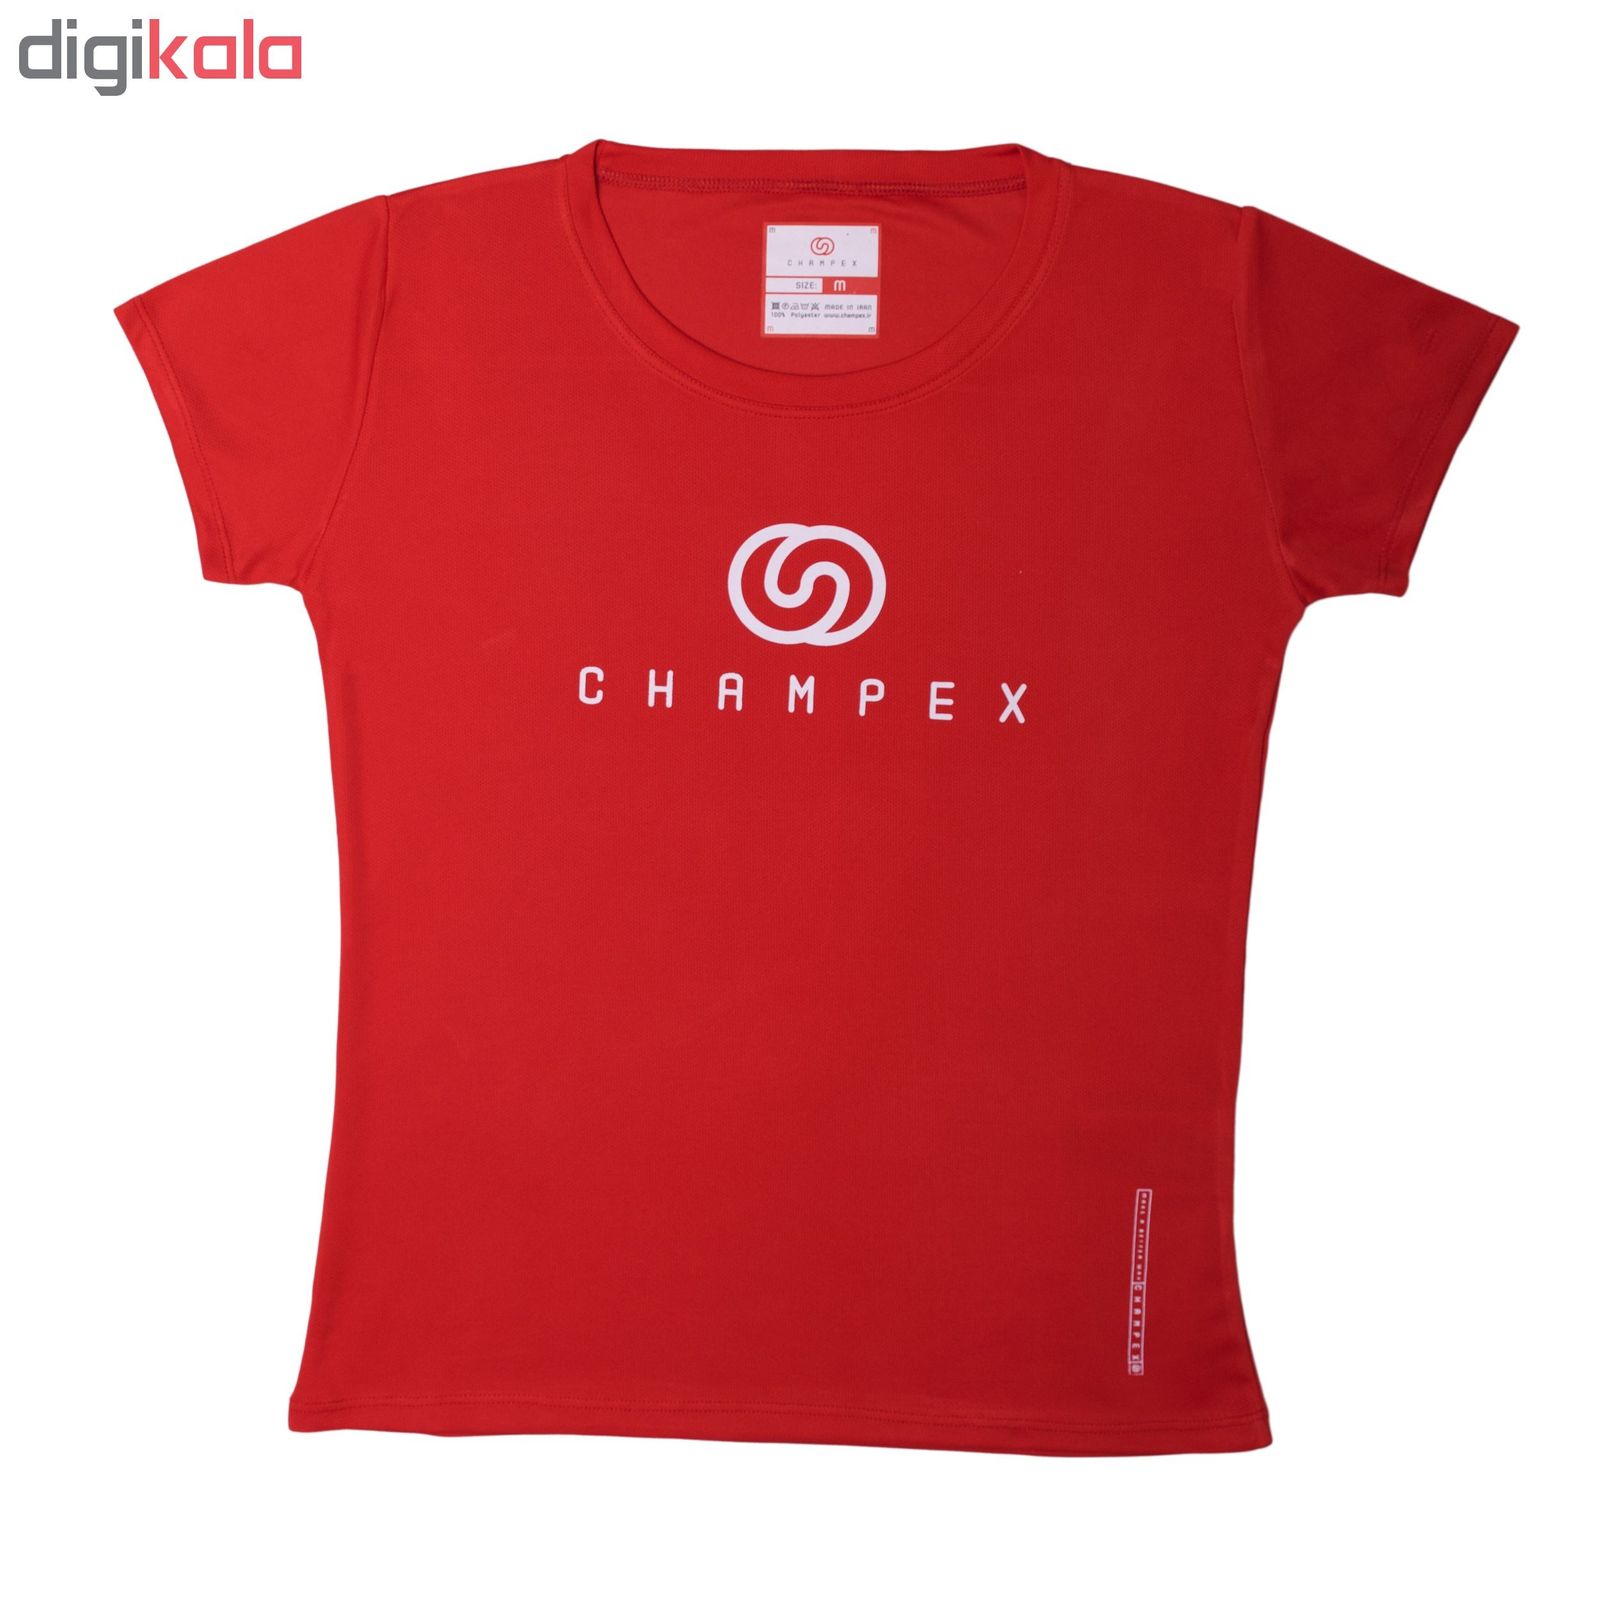 تیشرت ورزشی زنانه چمپکس مدل CHX-TWO Red